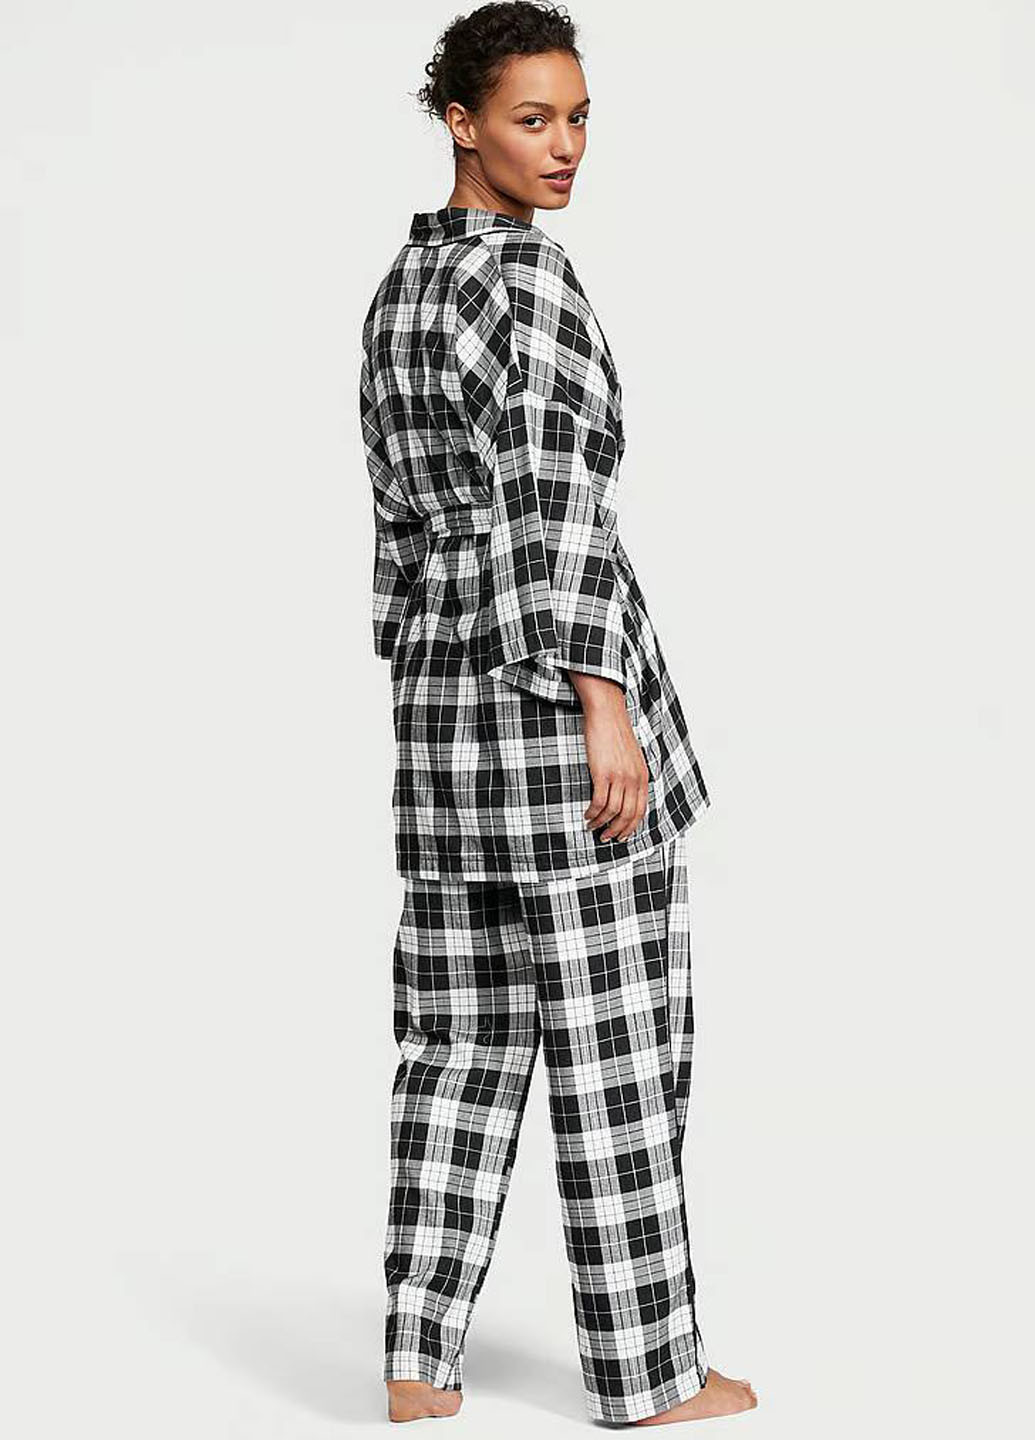 Черно-белая всесезон пижама (майка, халат, брюки) майка + брюки Victoria's Secret